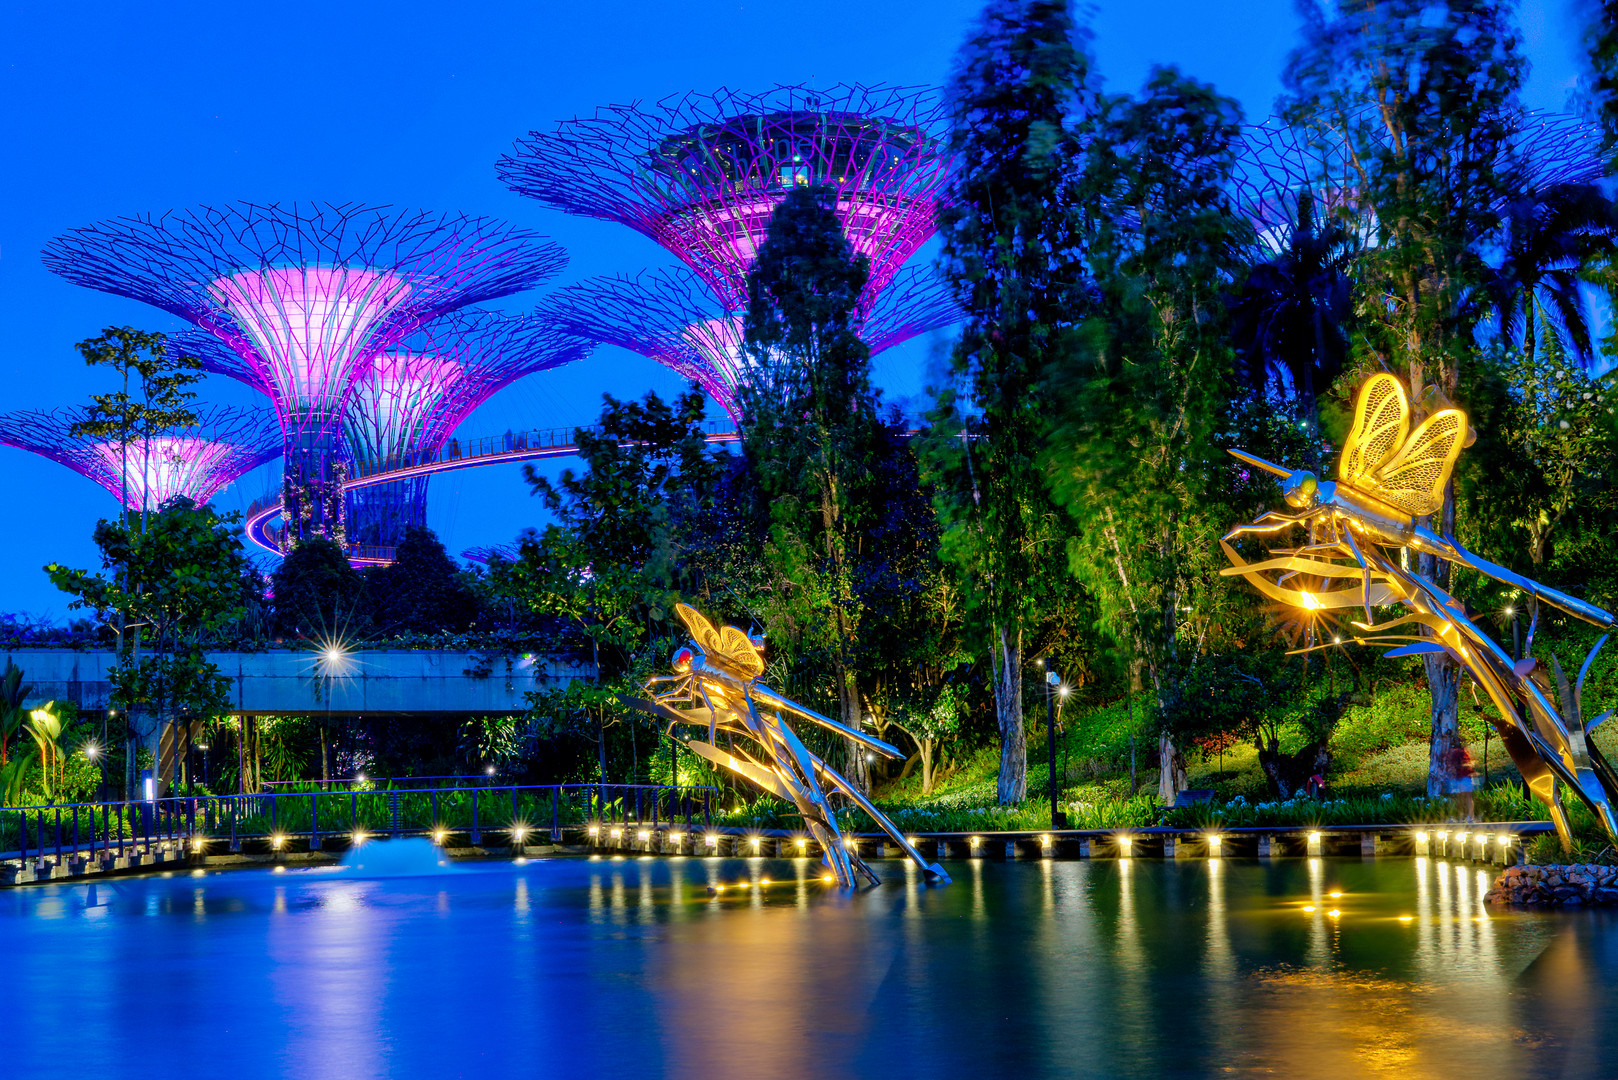 Magic Trees in Singapore